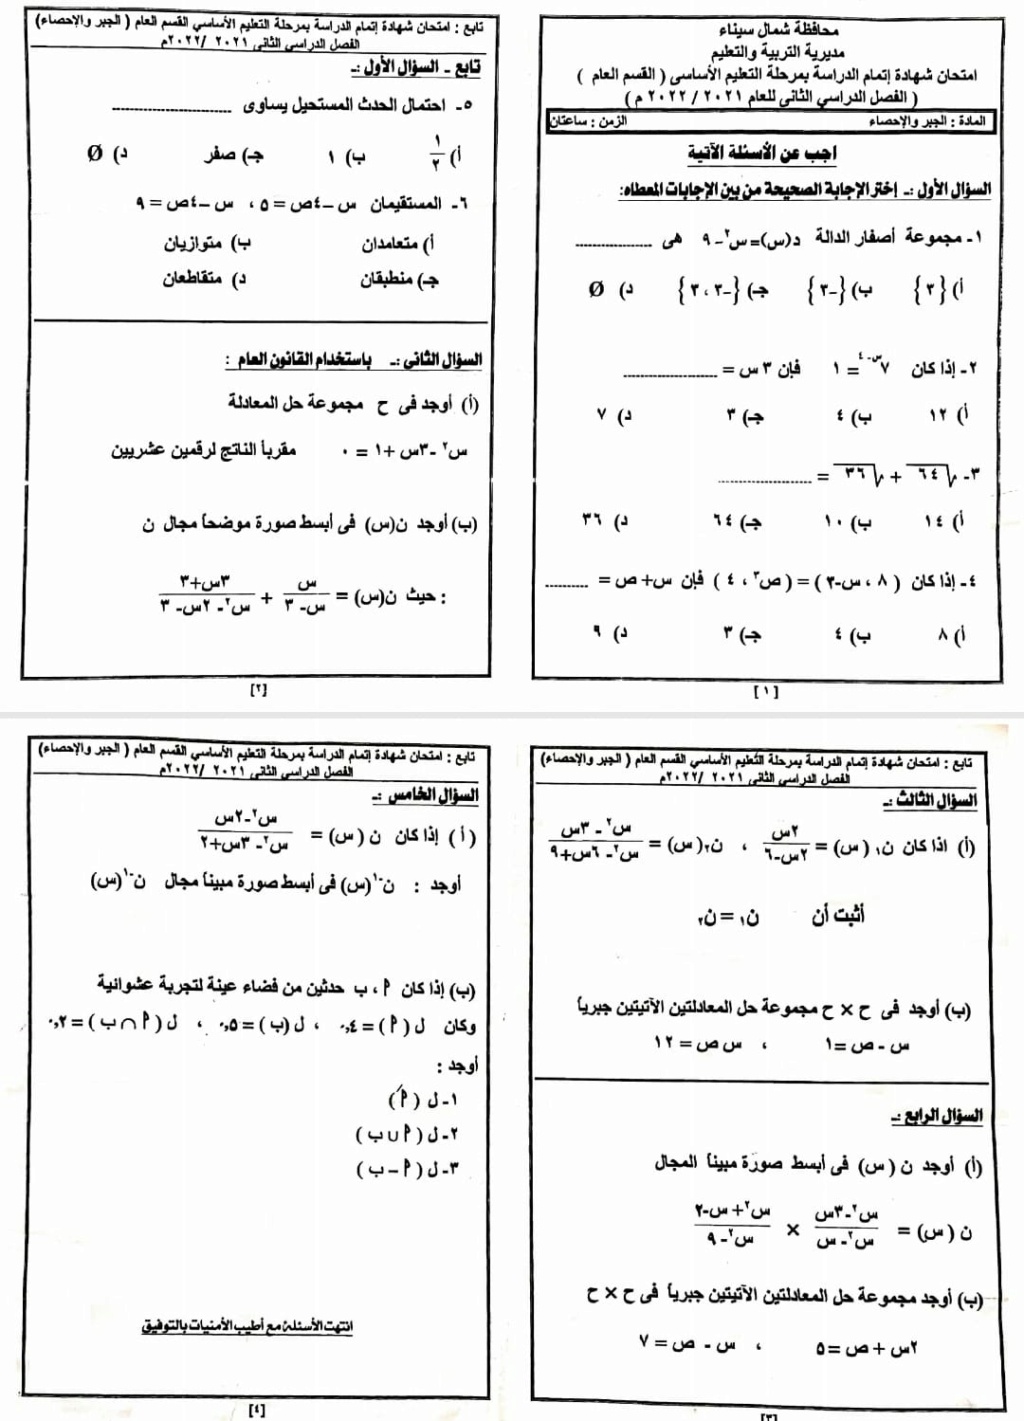  امتحان الهندسة للصف الثالث الاعدادي ترم ثاني 2022 محافظة شمال سيناء 6100